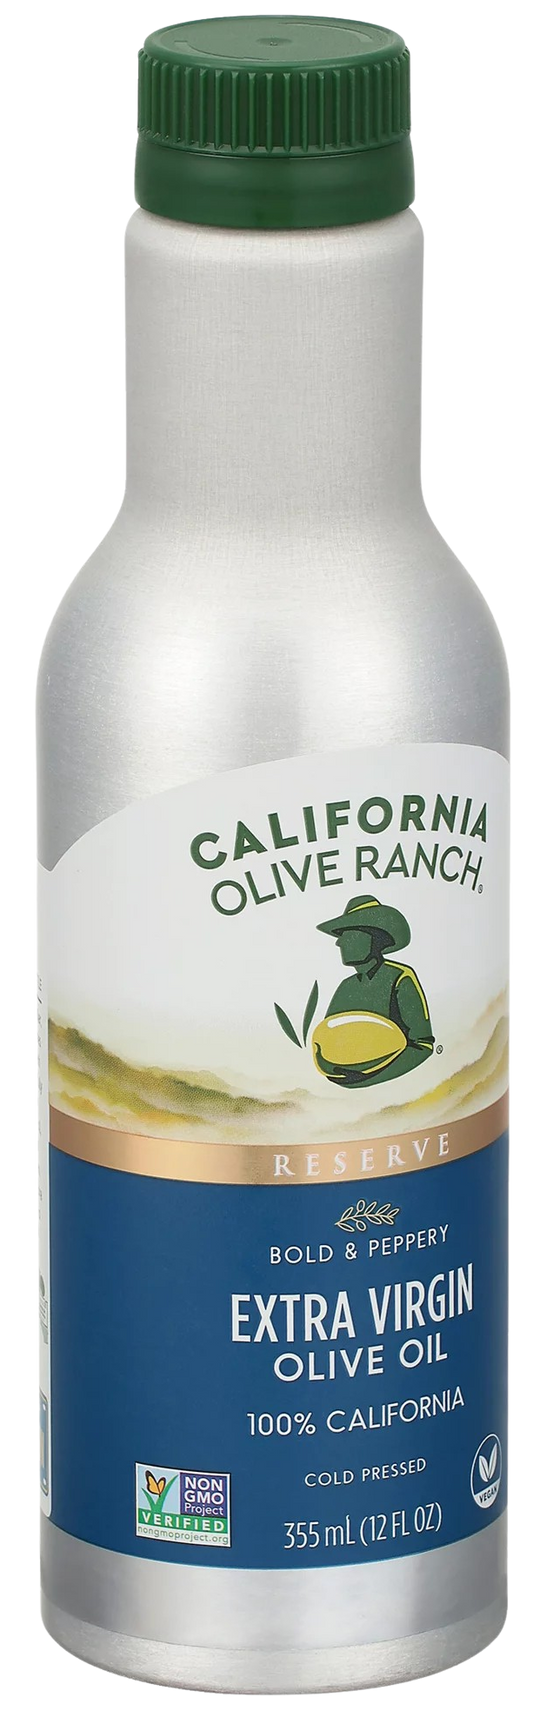 Reserve Miller's Olive Oil